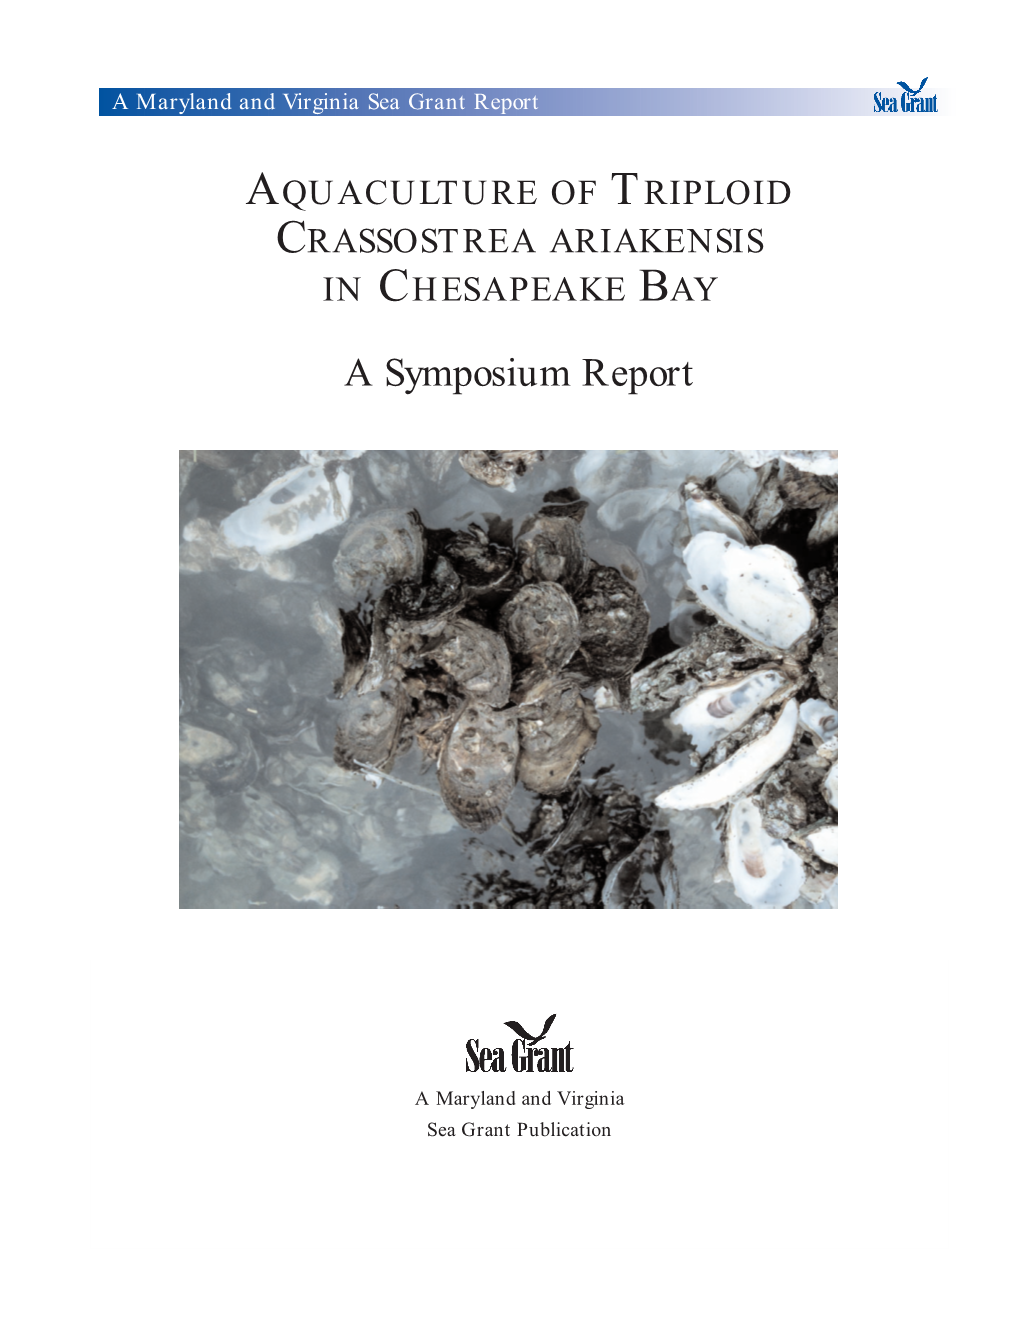 Aquaculture of Triploid Crassostrea Ariakensis in Chesapeake Bay